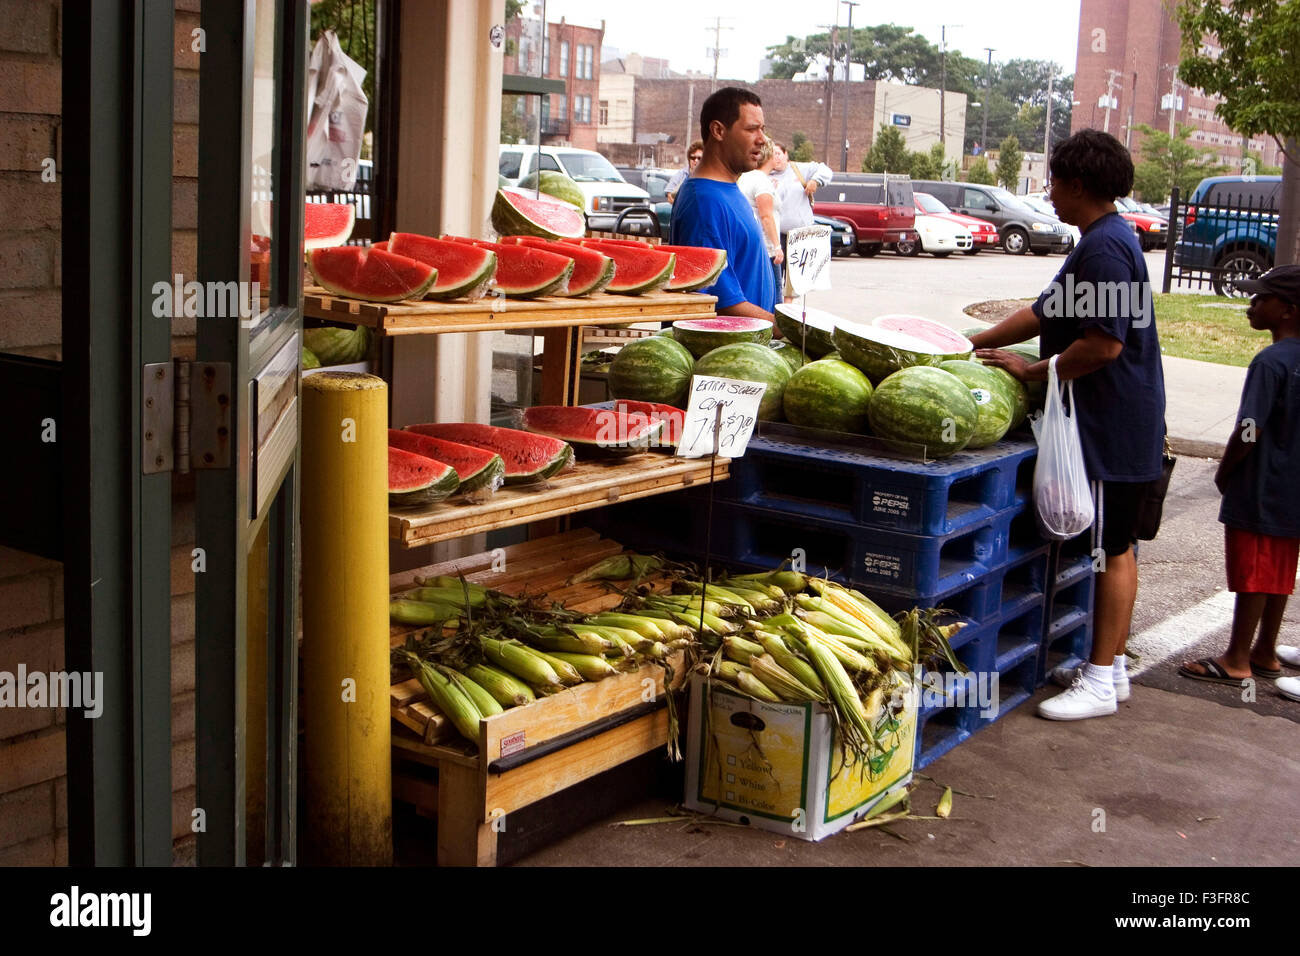 Wassermelone Obst Verkäufer, Denver, Colorado, USA, Vereinigte Staaten von Amerika, US, Vereinigte Staaten, Amerika, Amerikaner Stockfoto